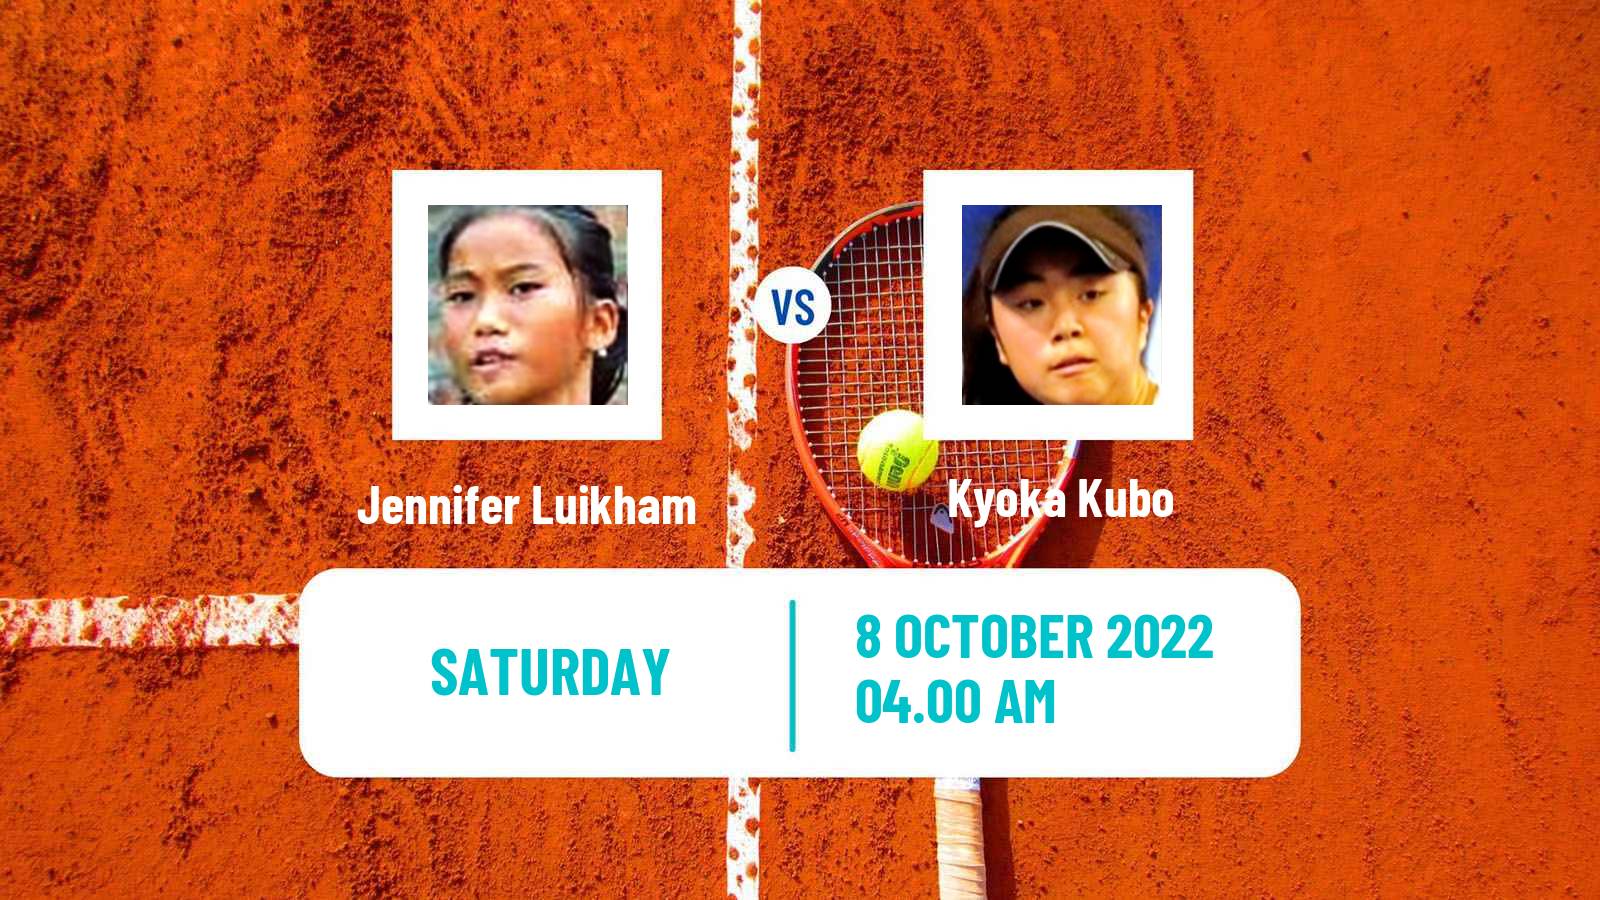 Tennis ITF Tournaments Jennifer Luikham - Kyoka Kubo